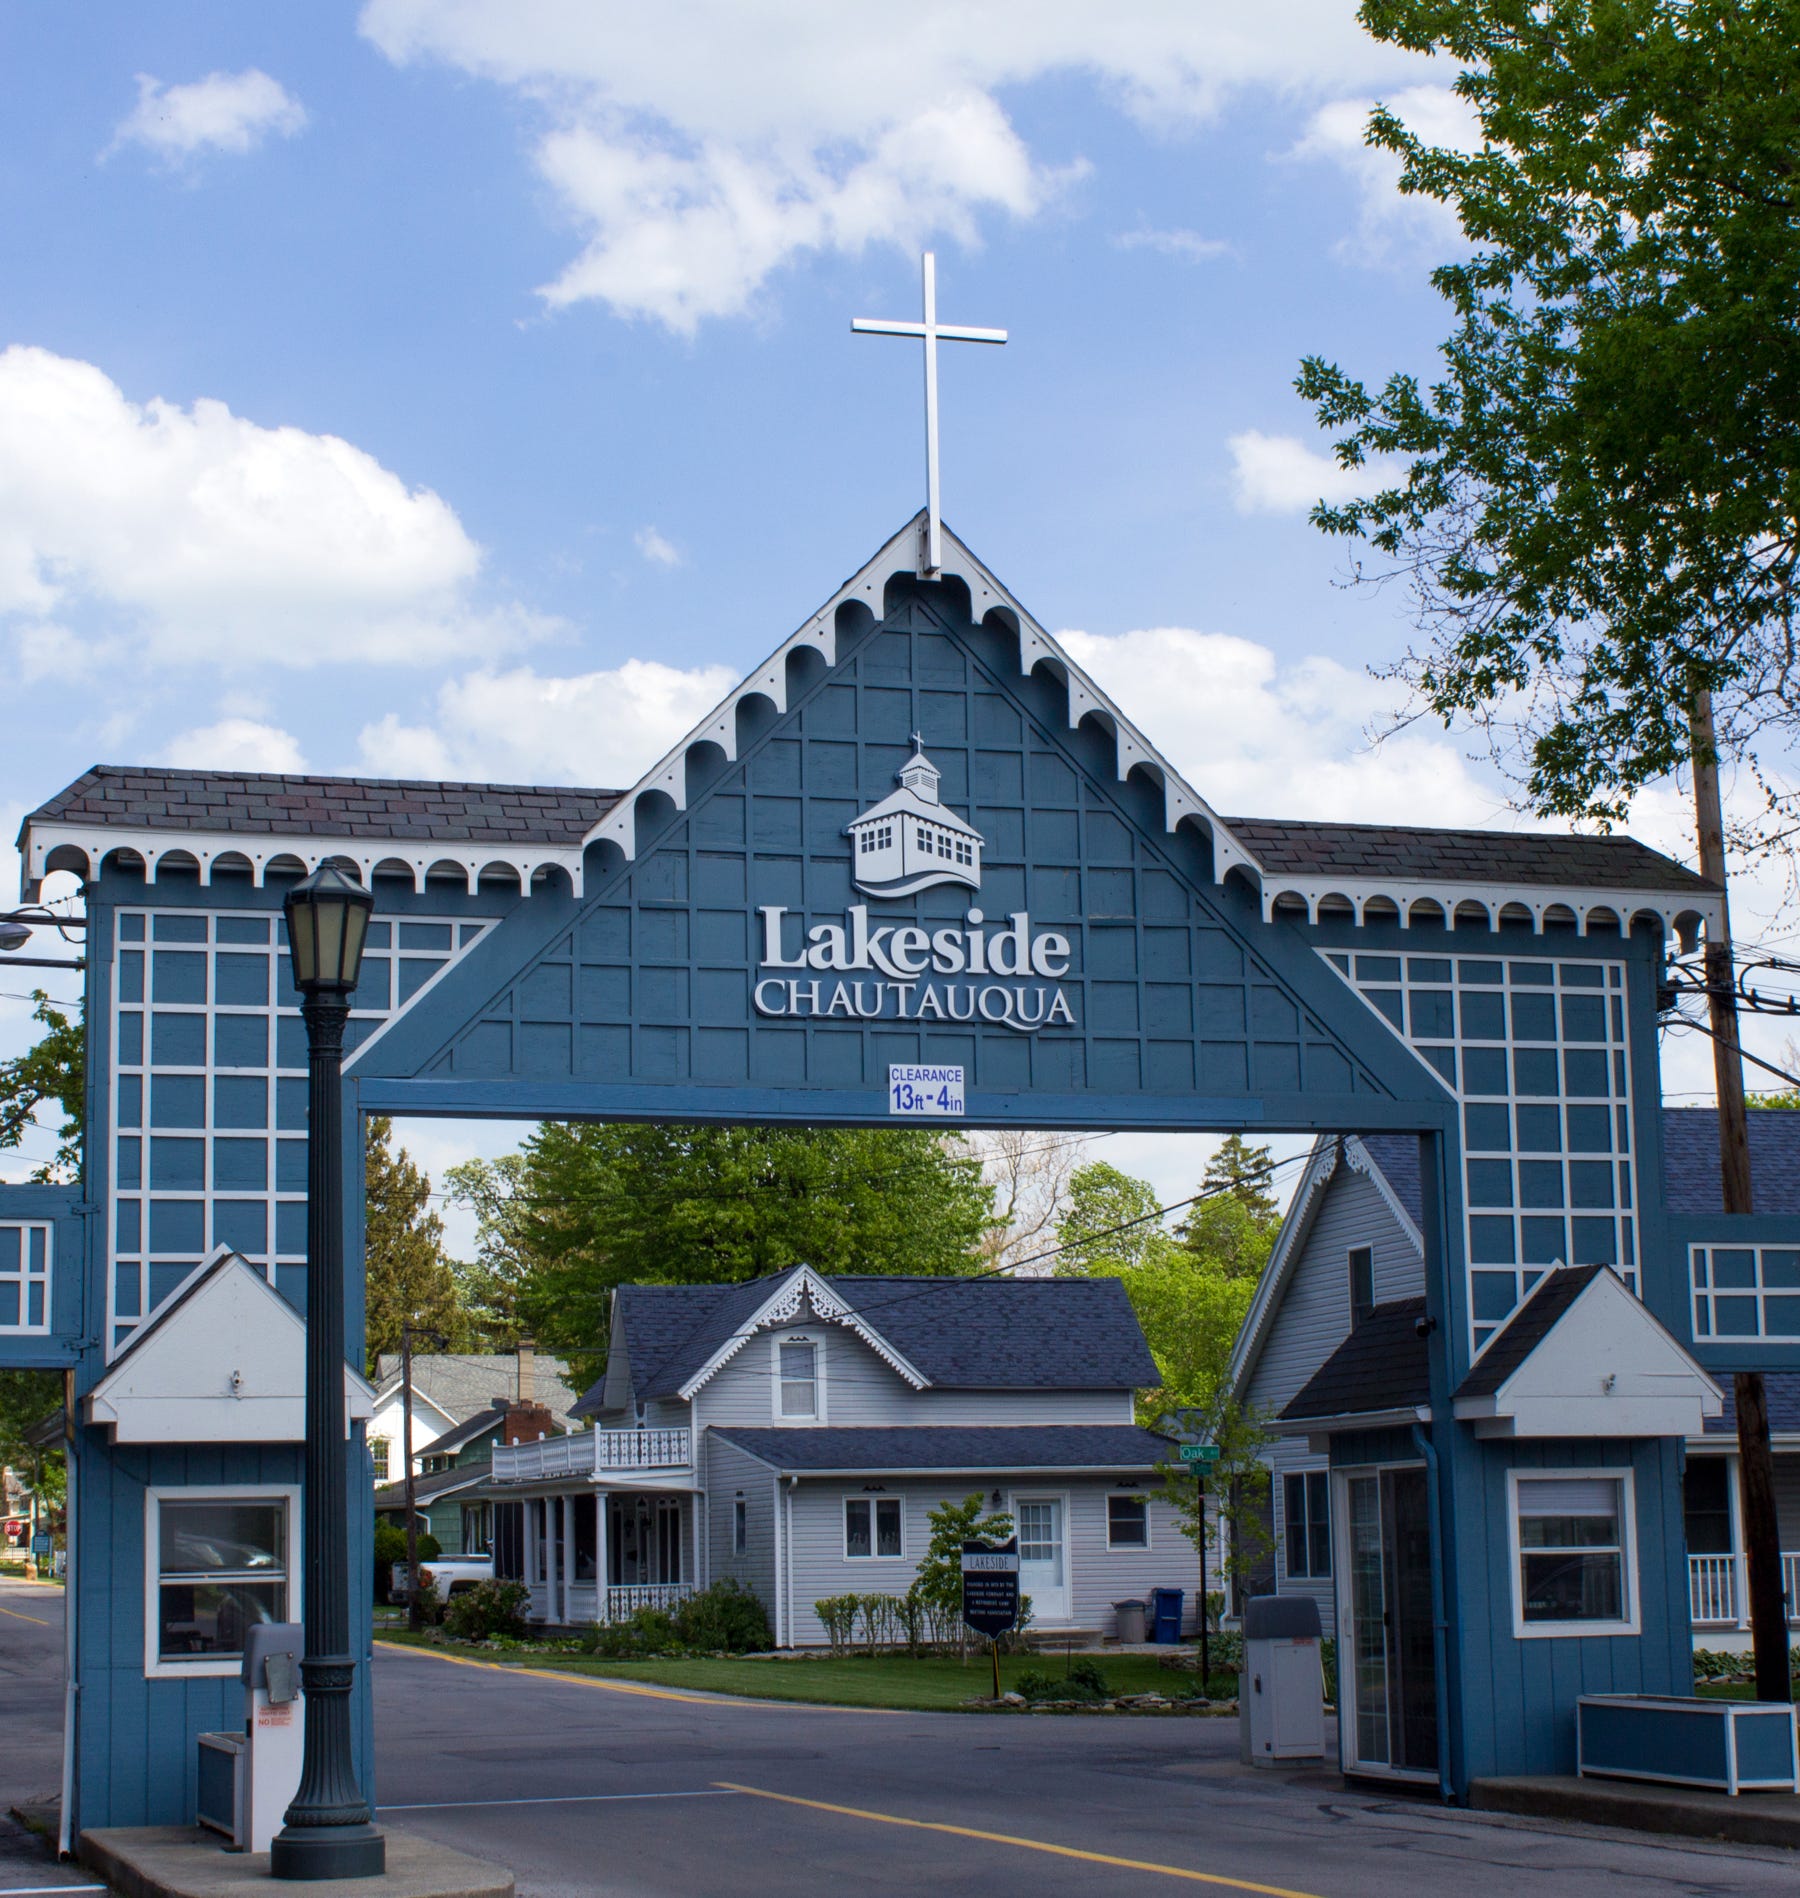 Lakeside Chautauqua, Ohio: A place to 